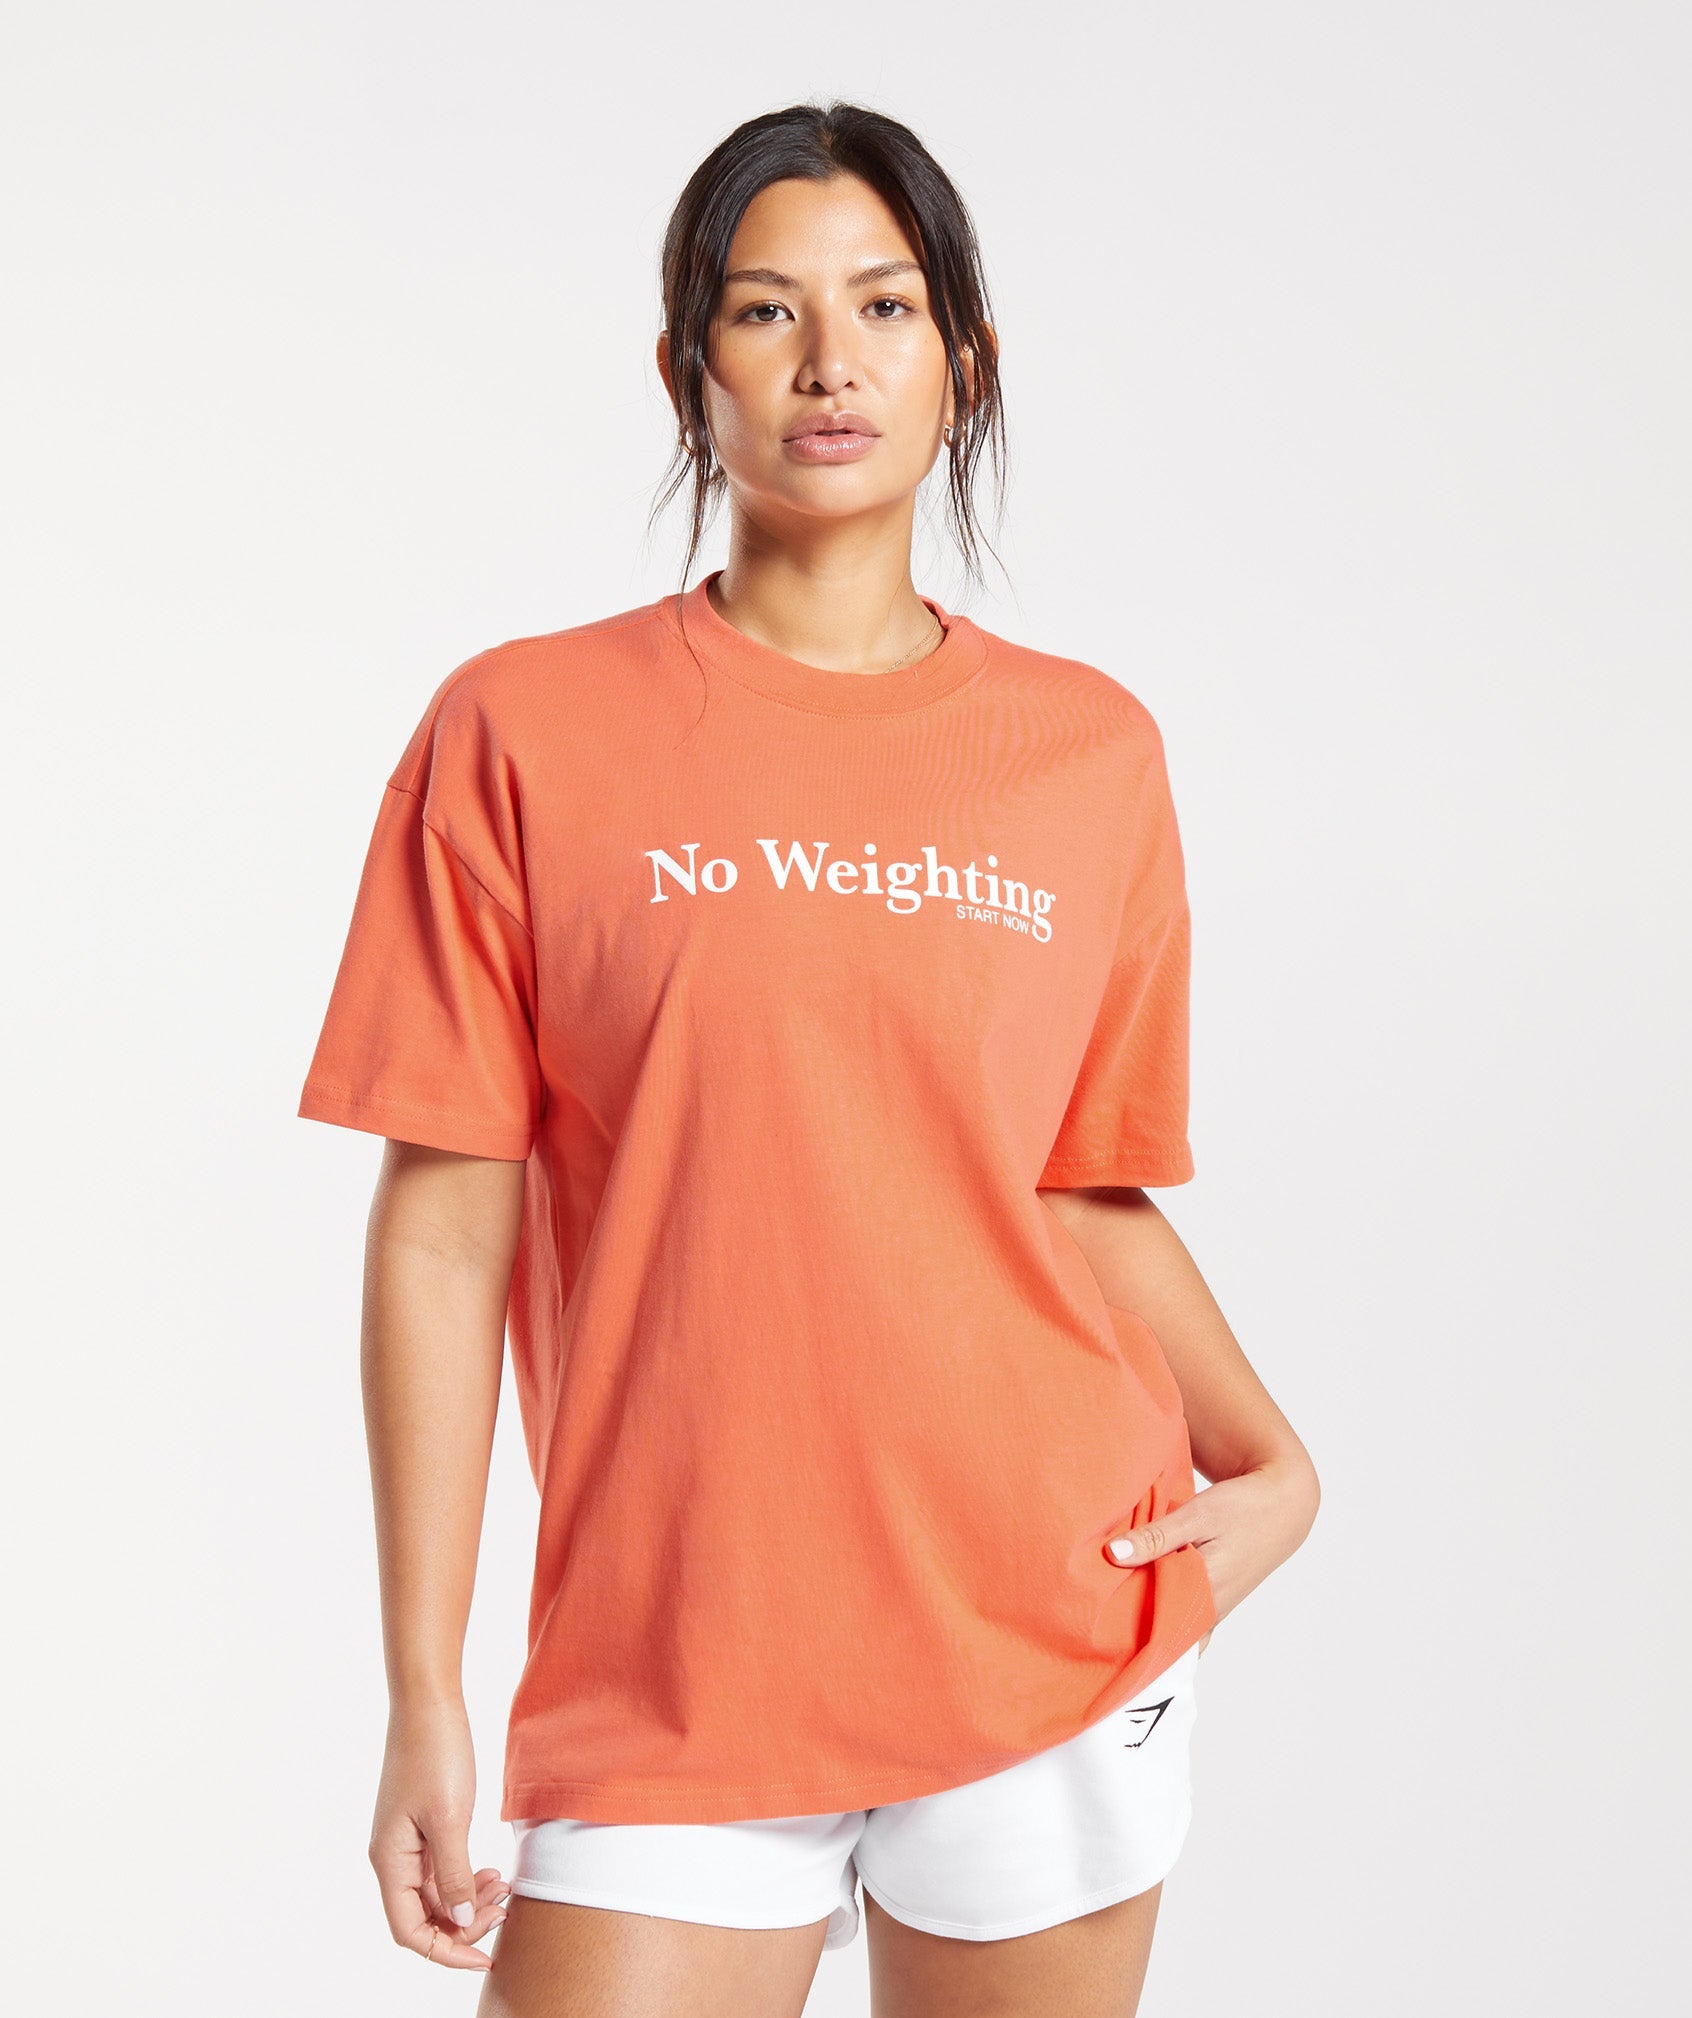 No Weighting Oversized T-Shirt in Aerospace Orange - view 1